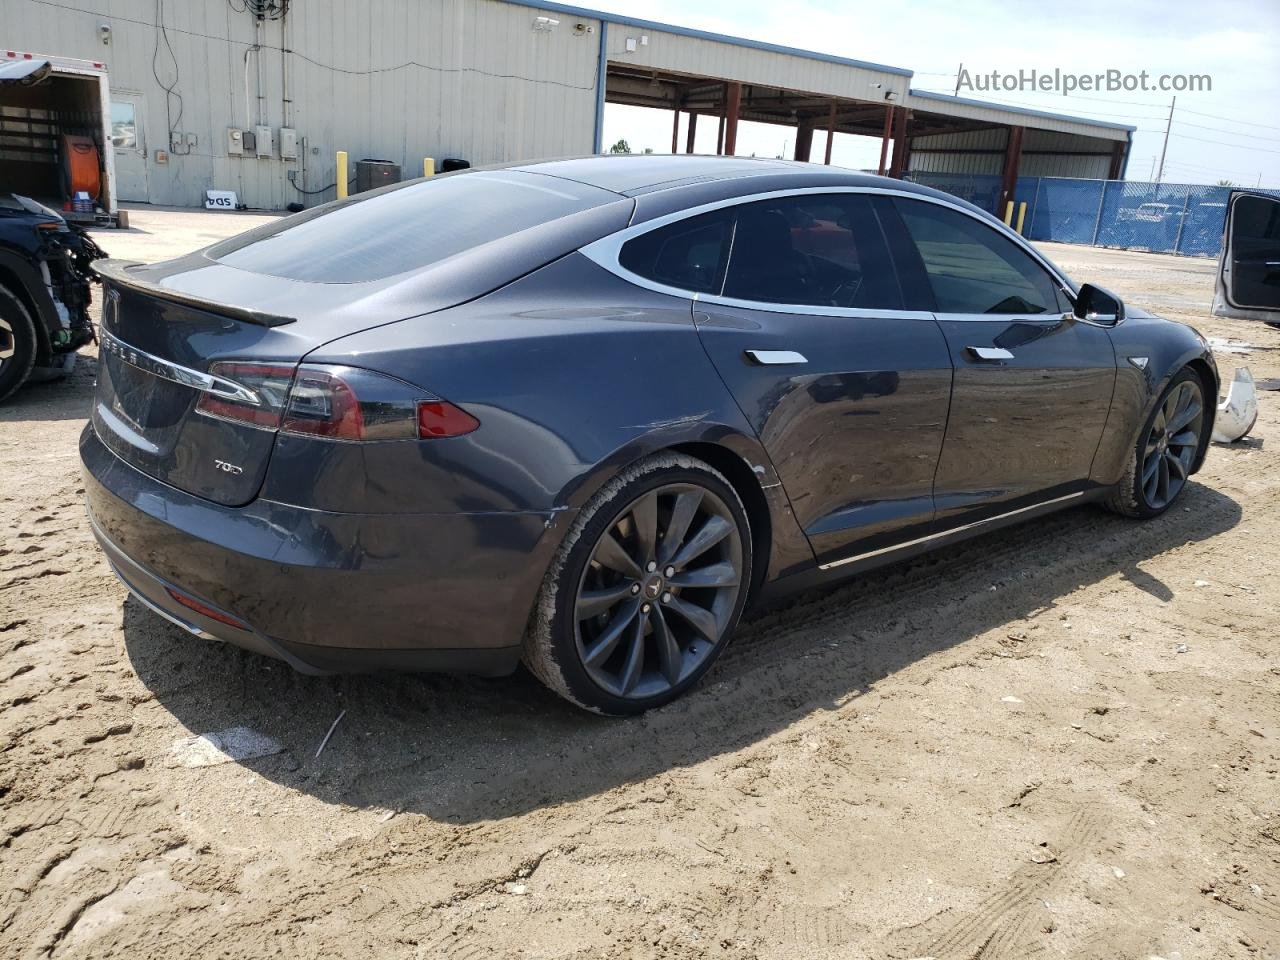 2015 Tesla Model S  Gray vin: 5YJSA1E2XFF109534